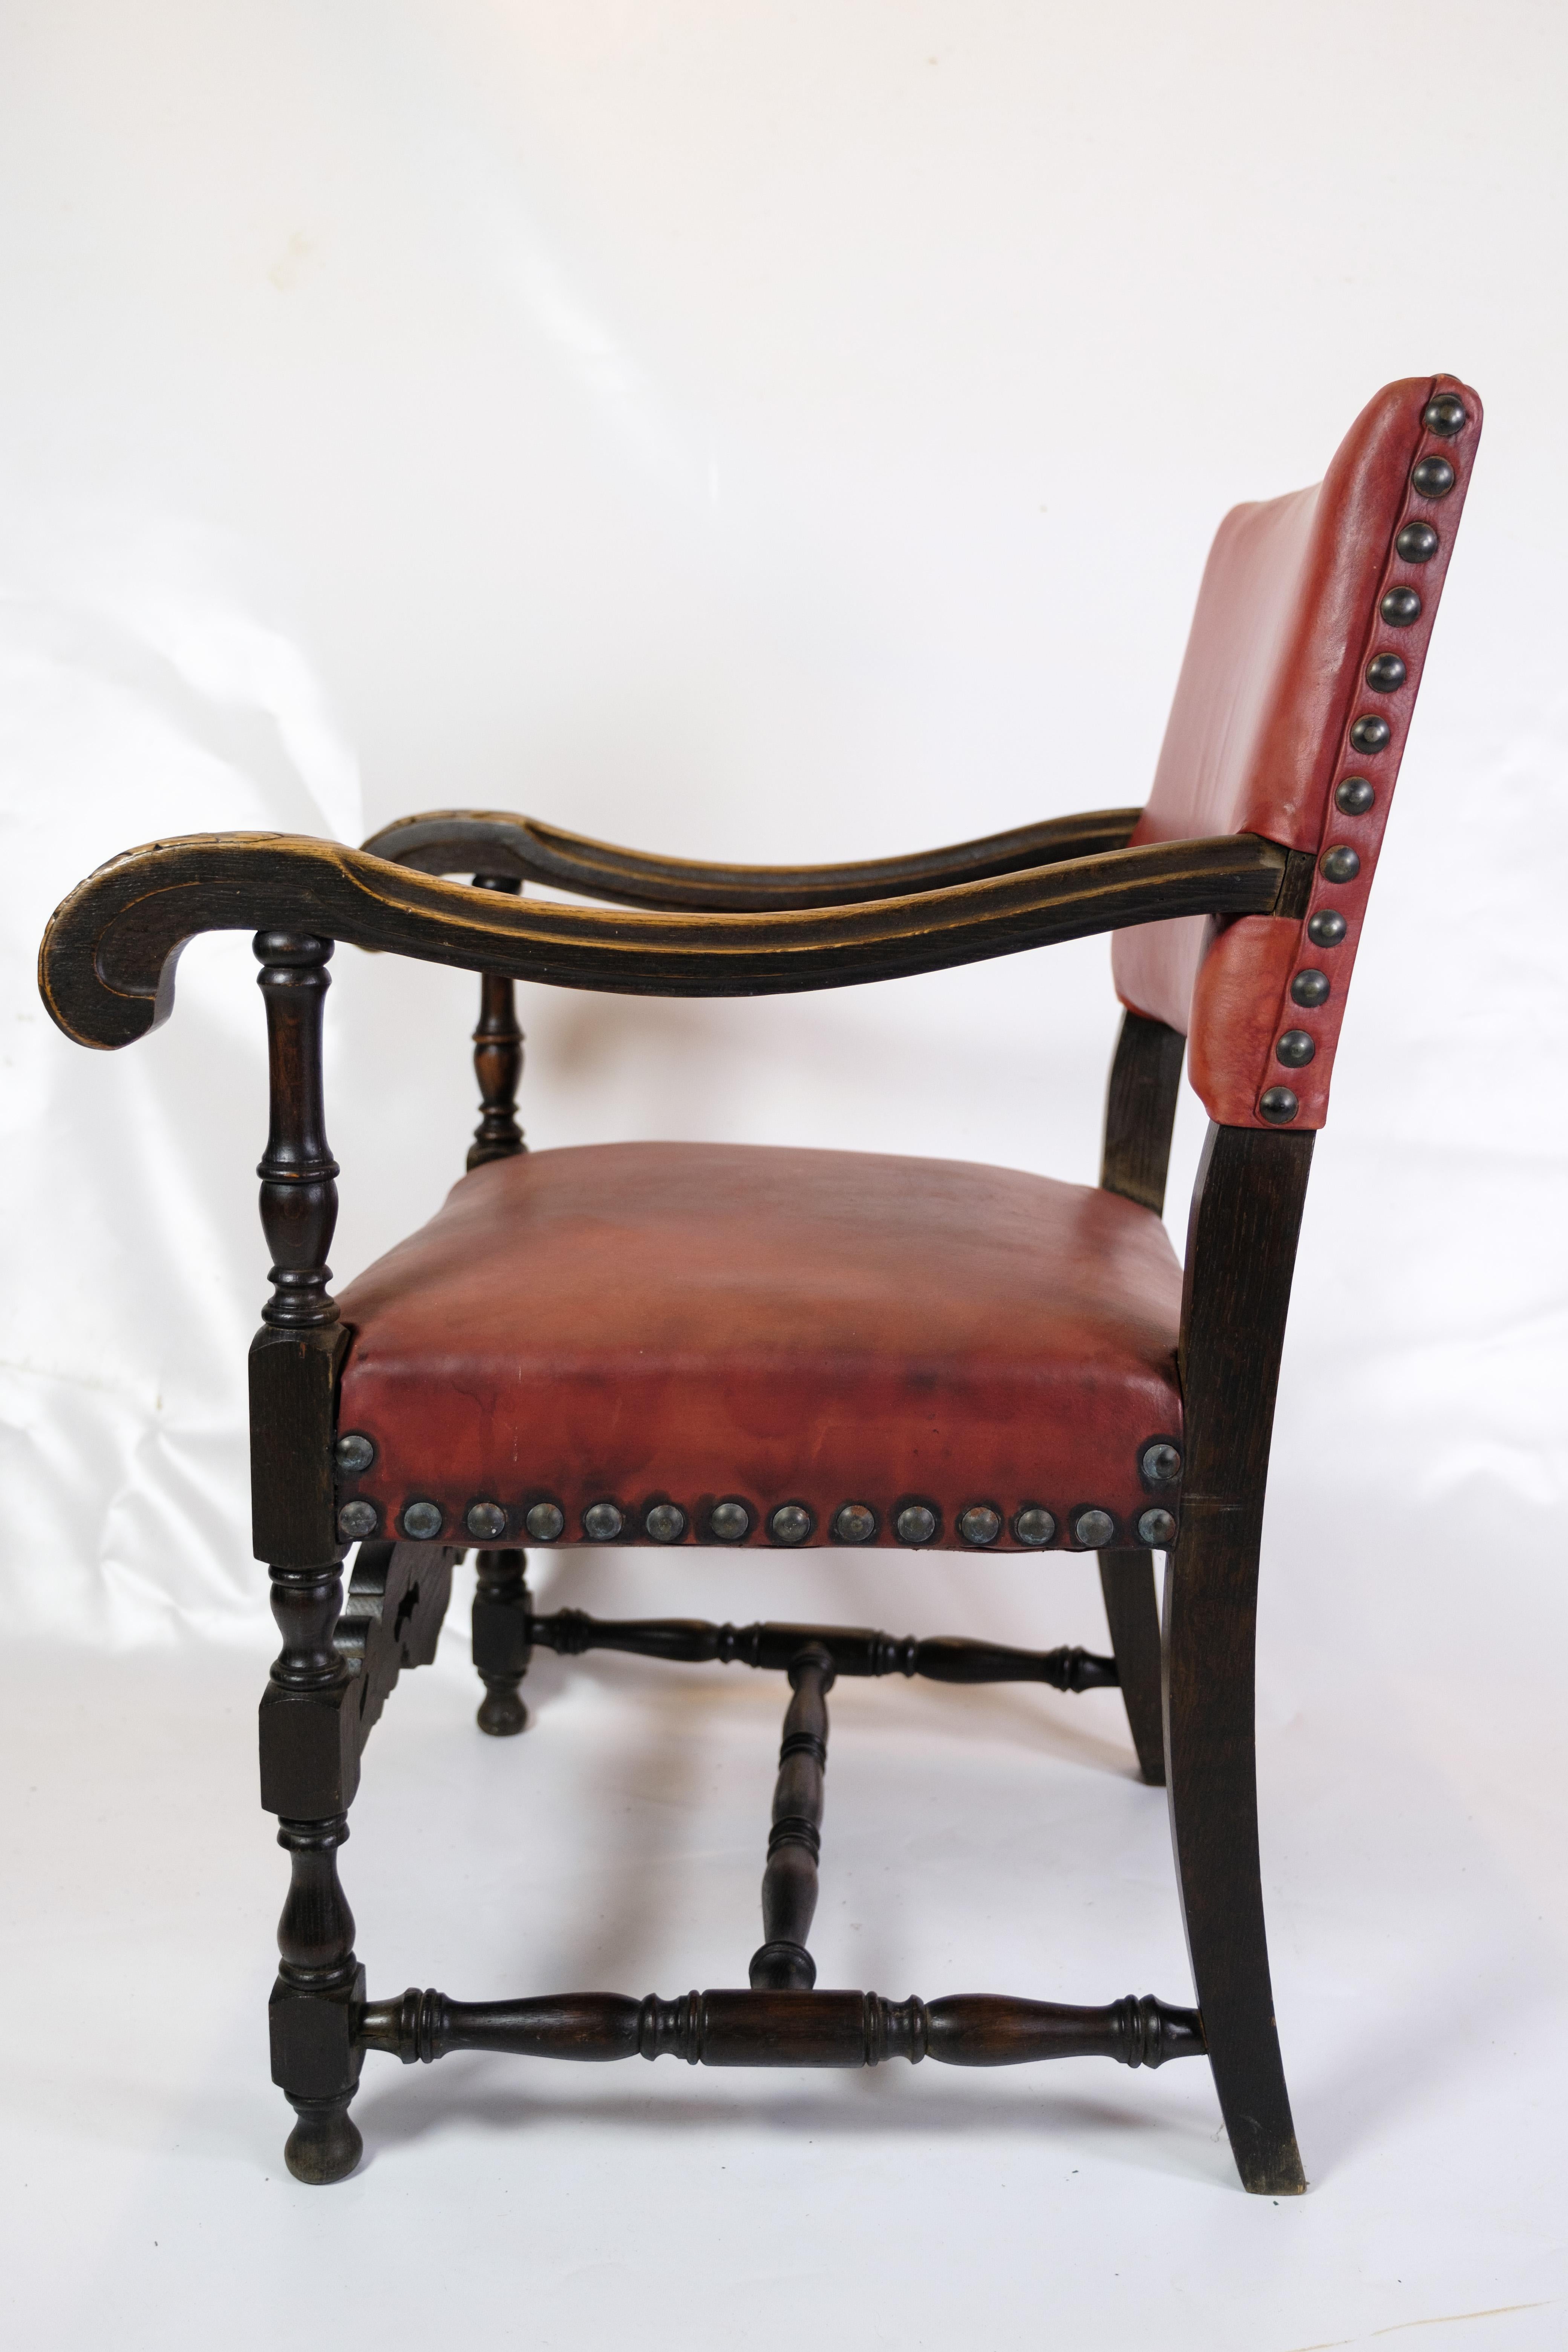 Dieses Set aus zwei antiken Sesseln von 1930 ist eine wunderbare Kombination aus echter Handwerkskunst und zeitloser Eleganz. Mit ihren roten Ledersitzen und dem Gestell aus Eichenholz strahlen diese Stühle einen einzigartigen Vintage-Charme und